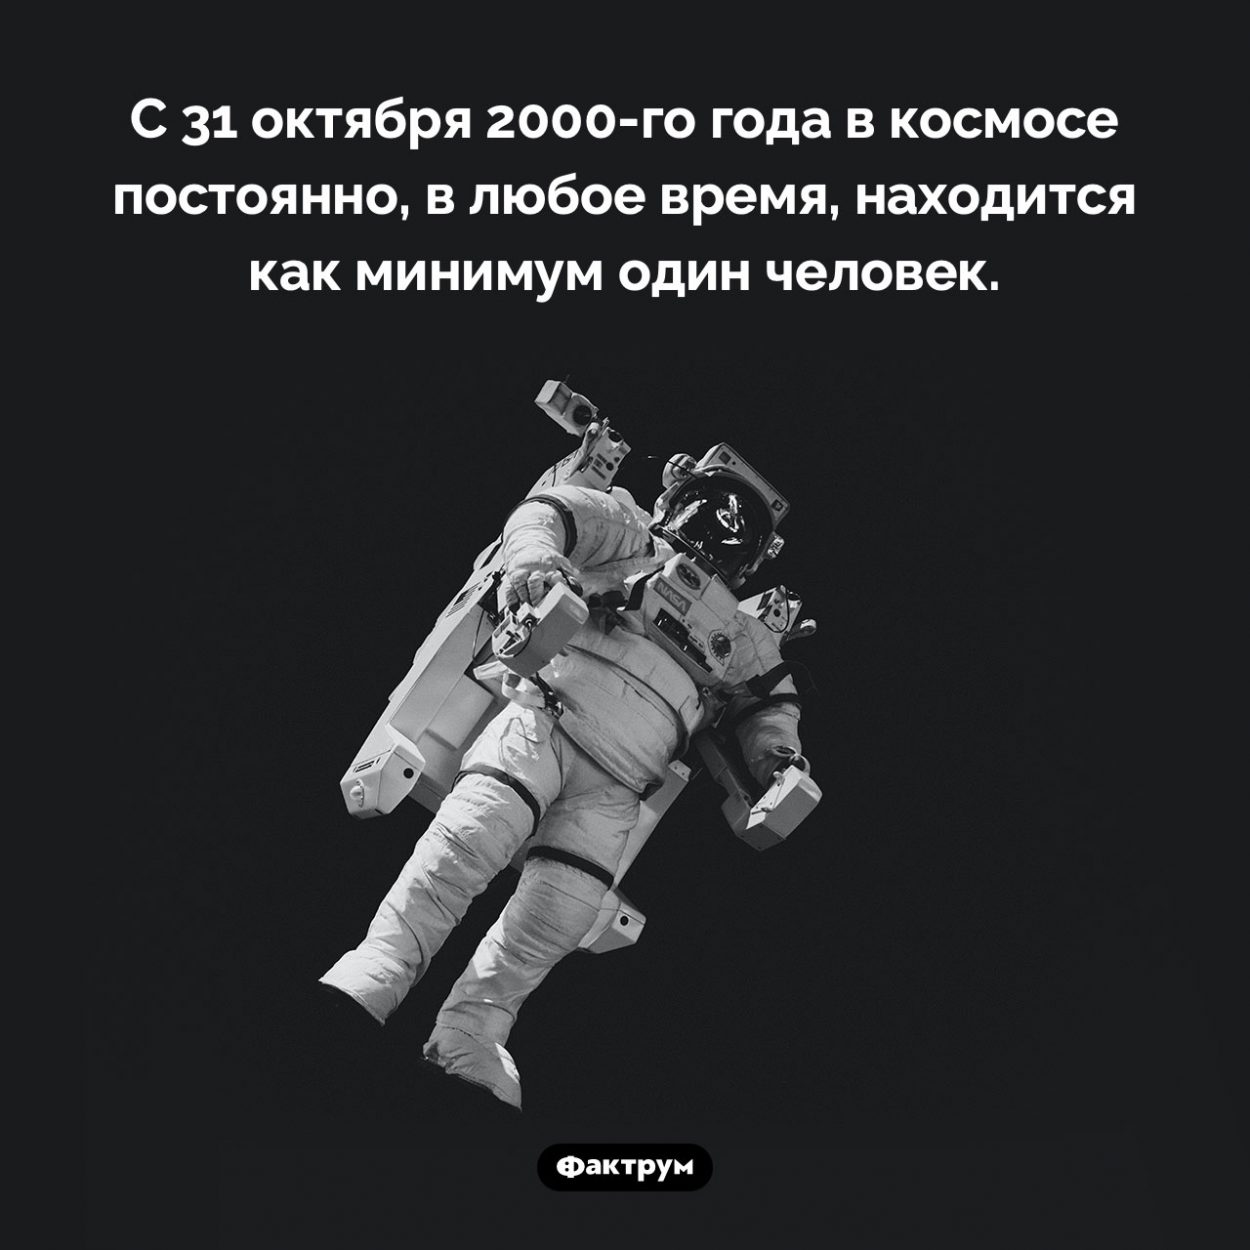 Сколько времени люди пристутствуют в космосе. С 31 октября 2000-го года в космосе постоянно, в любое время, находится как минимум один человек.